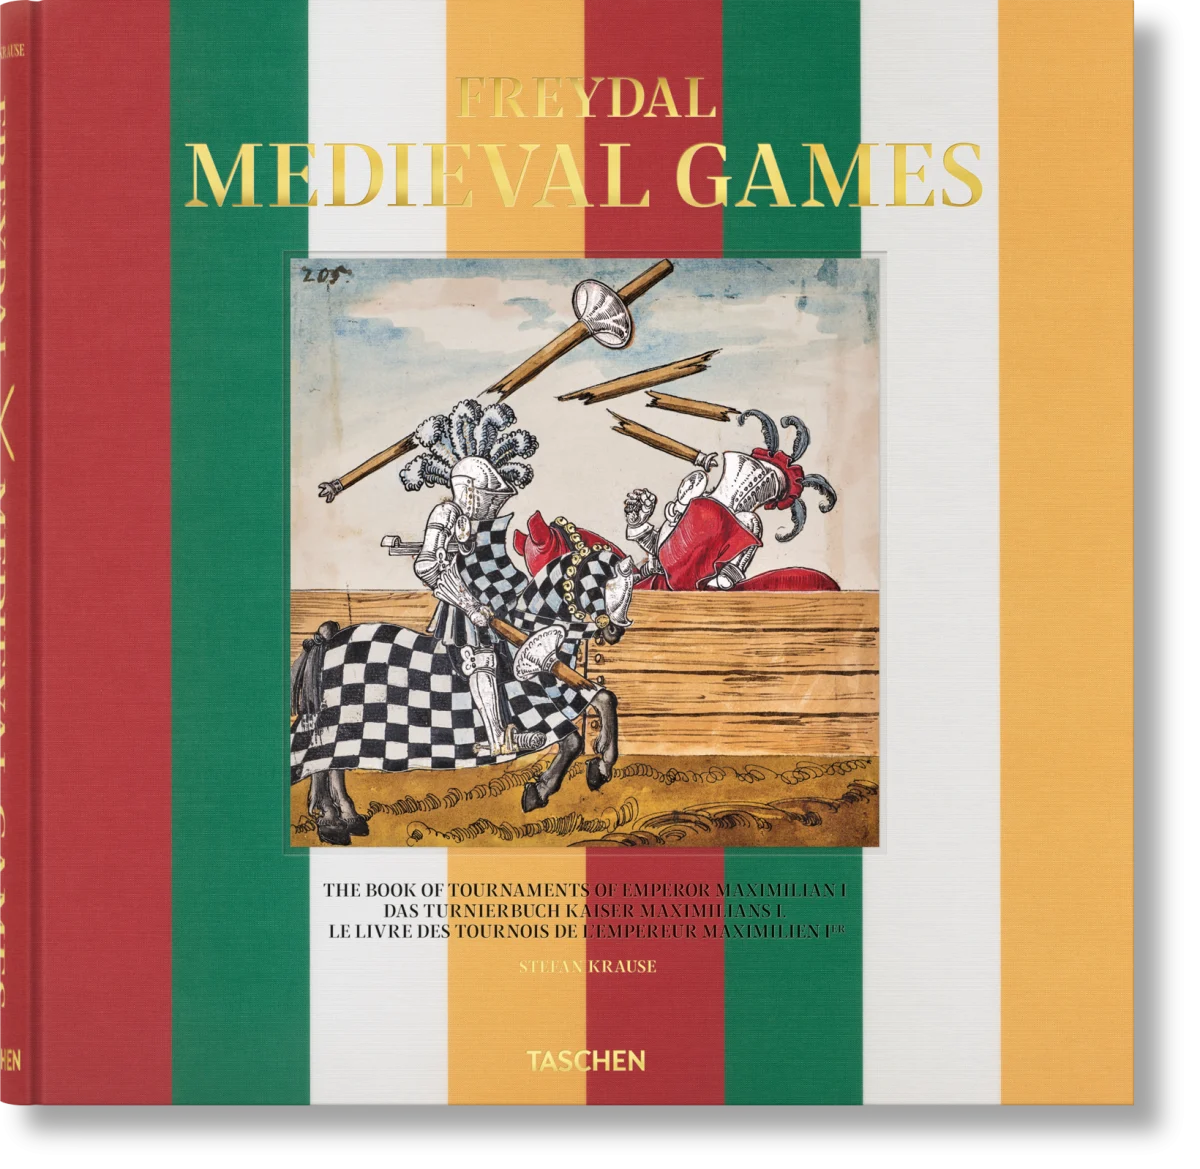 Freydal. Medieval Games. Das Turnierbuch Kaiser Maximilians I.